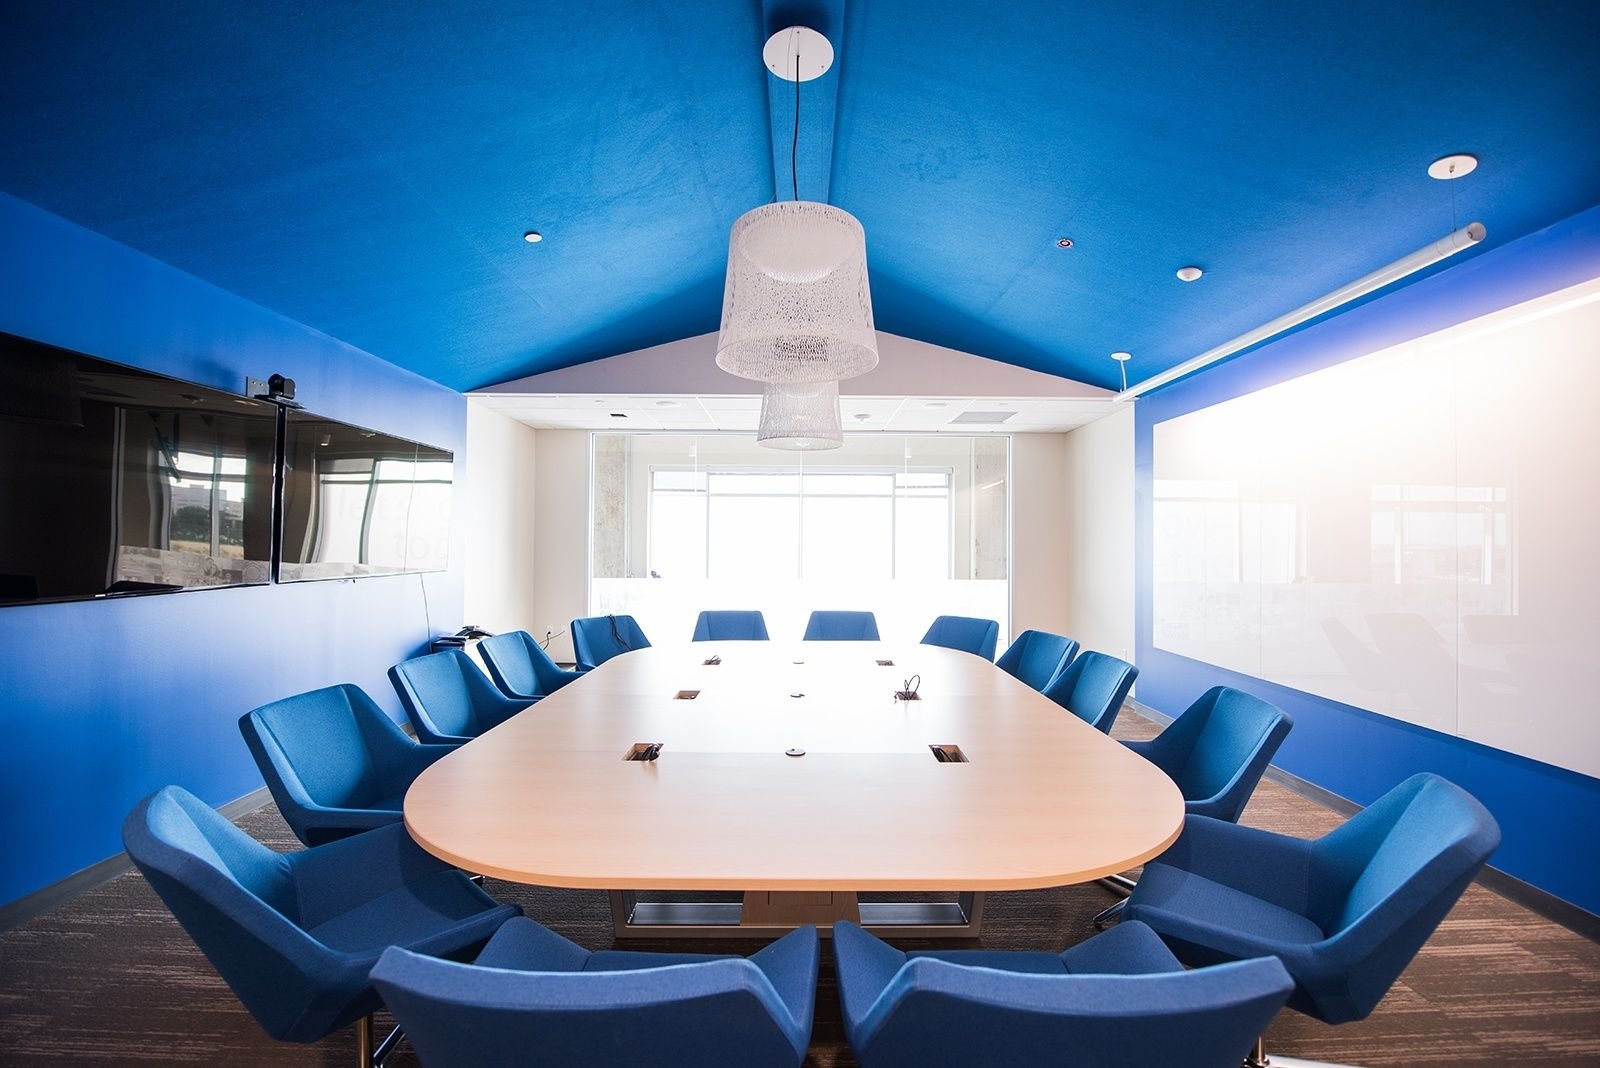 Meet blue. Интерьер переговорной комнаты. Офисный интерьер. Синий интерьер офиса. Конференц зал.